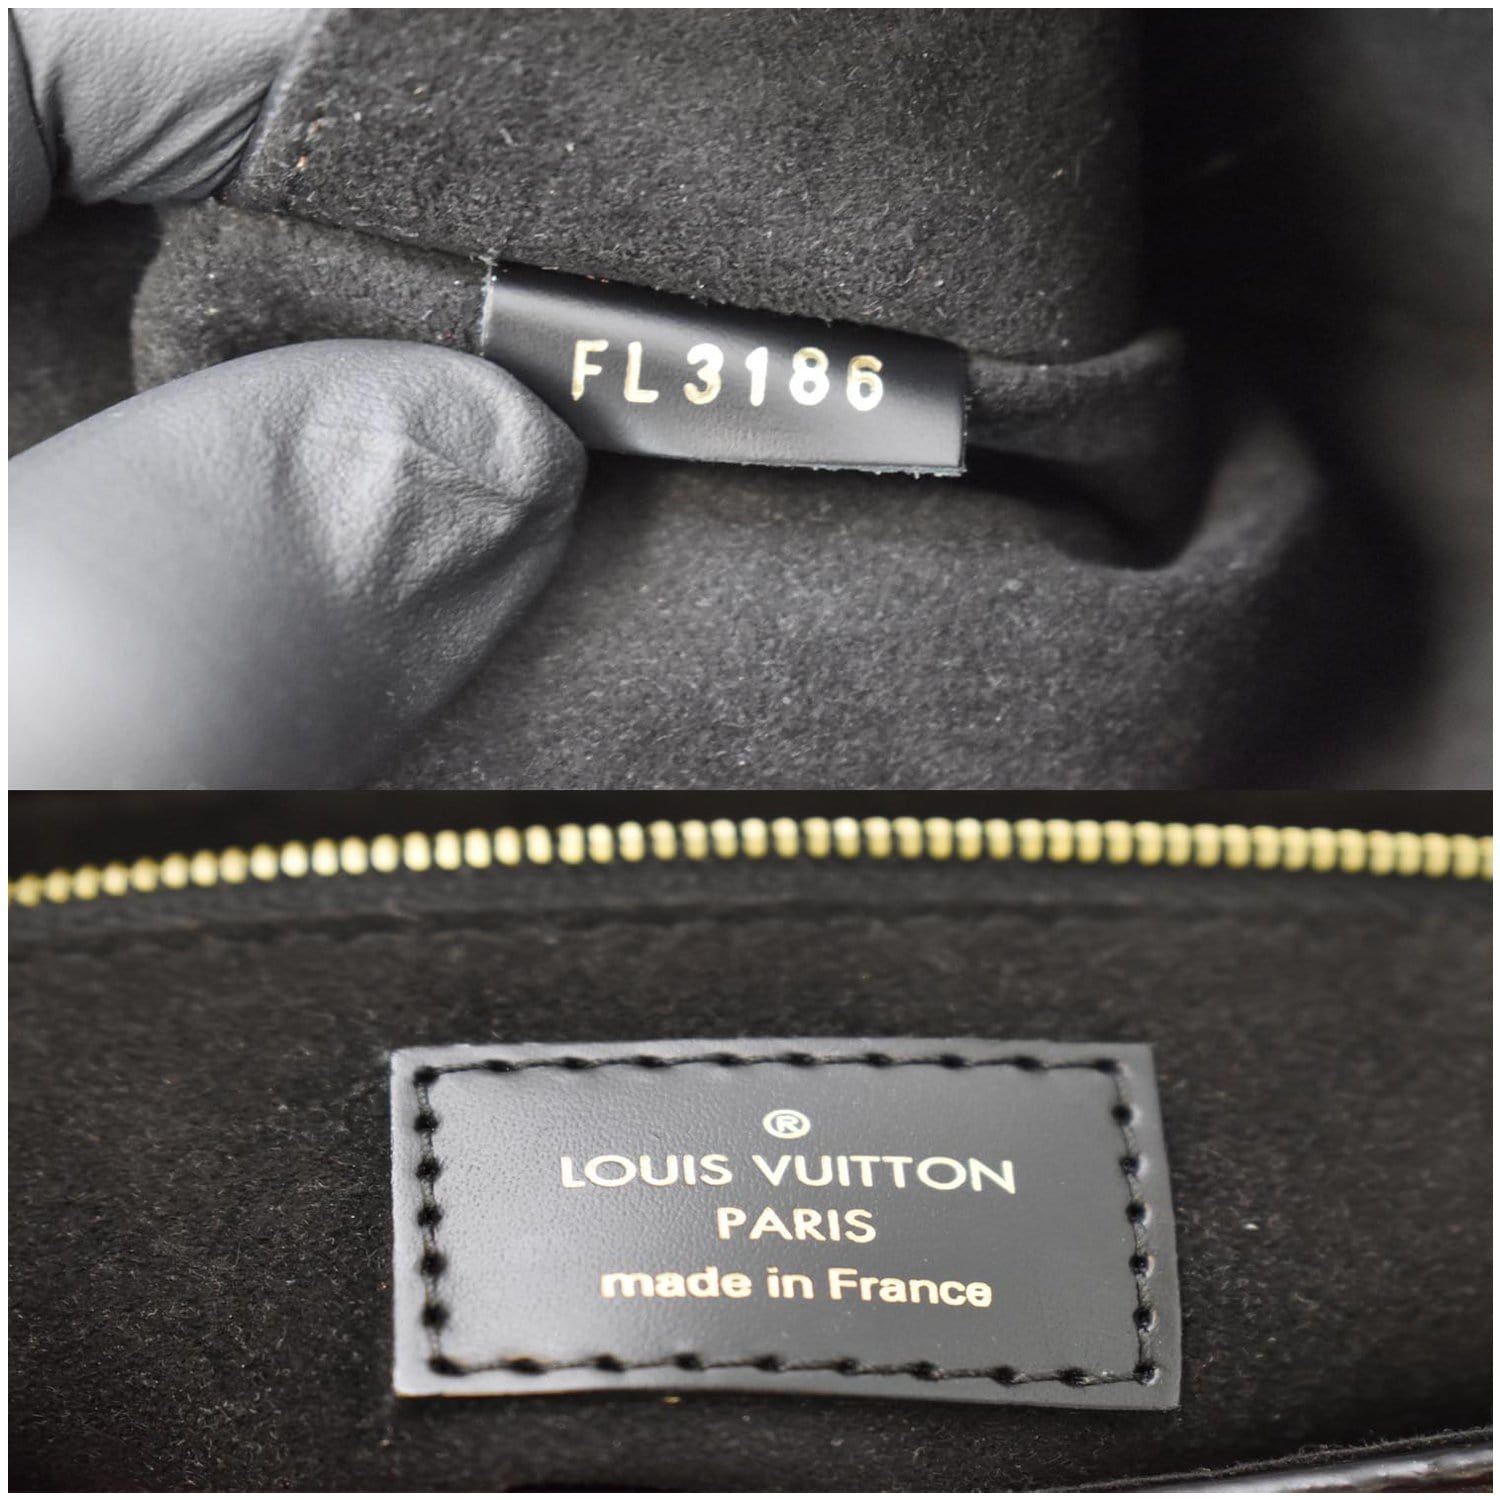 Louis Vuitton Classic Black & Brown Cap - Monogram Signature Design -  HypedEffect